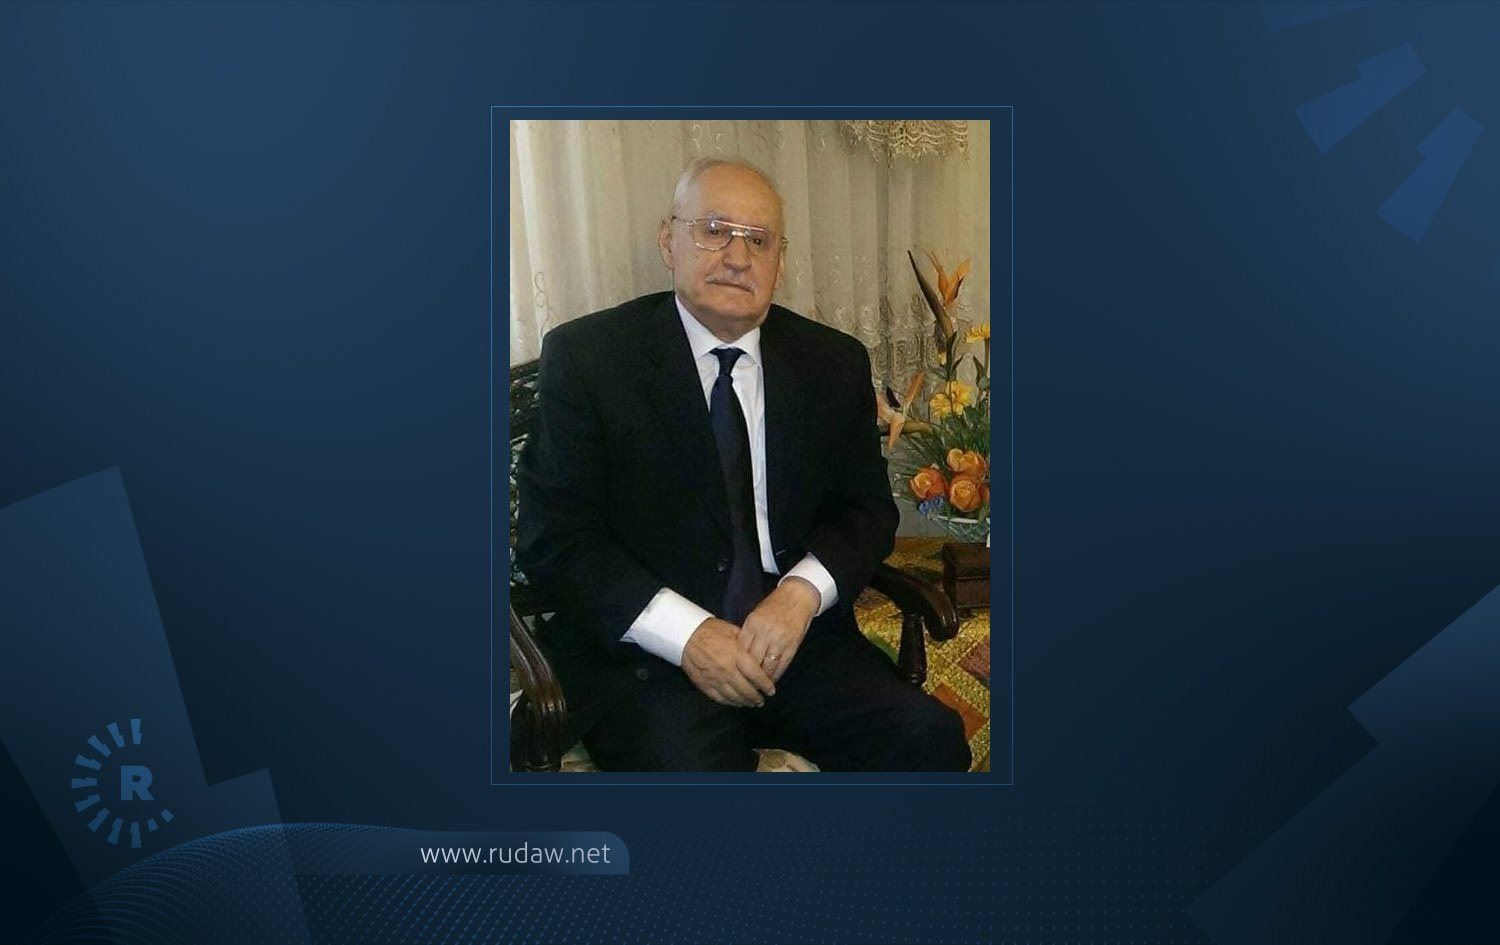 وفاة رئيس أركان الجيش العراقي الأسبق| رووداو.نيت